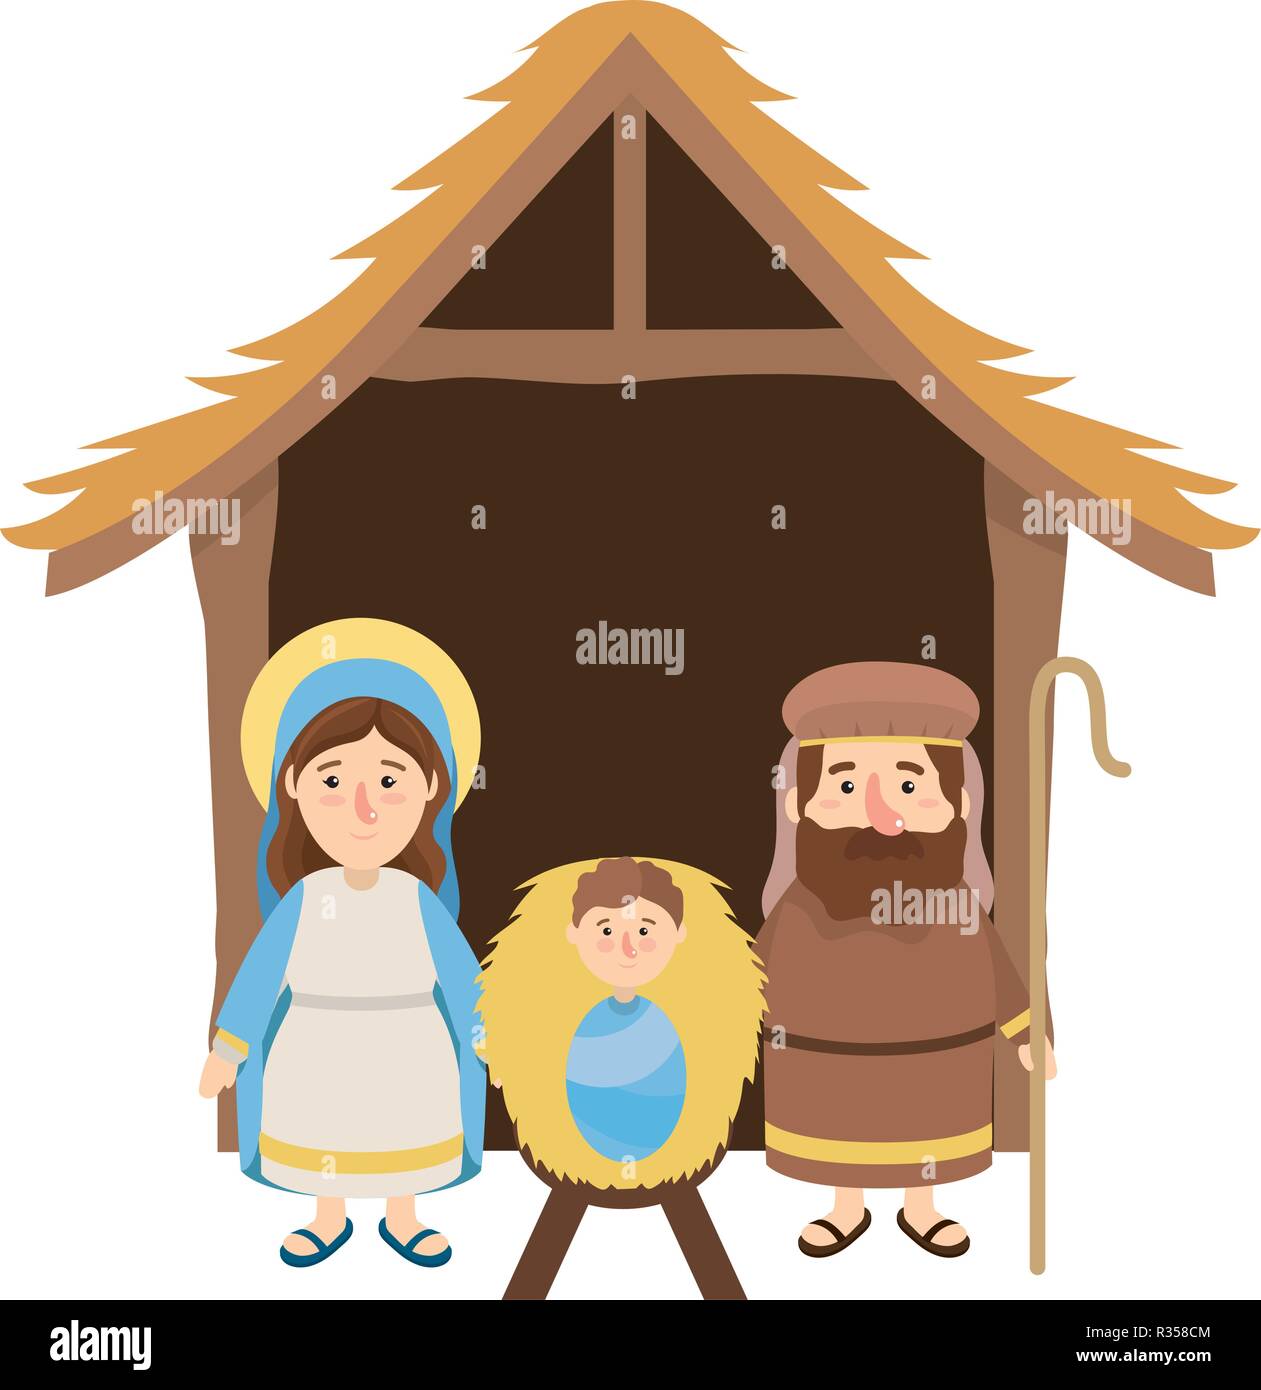 Immagini Natale Nativita.Natale Nativita Presepe Scena Con Giuseppe E Maria Con Gesu Cartoon Immagine E Vettoriale Alamy